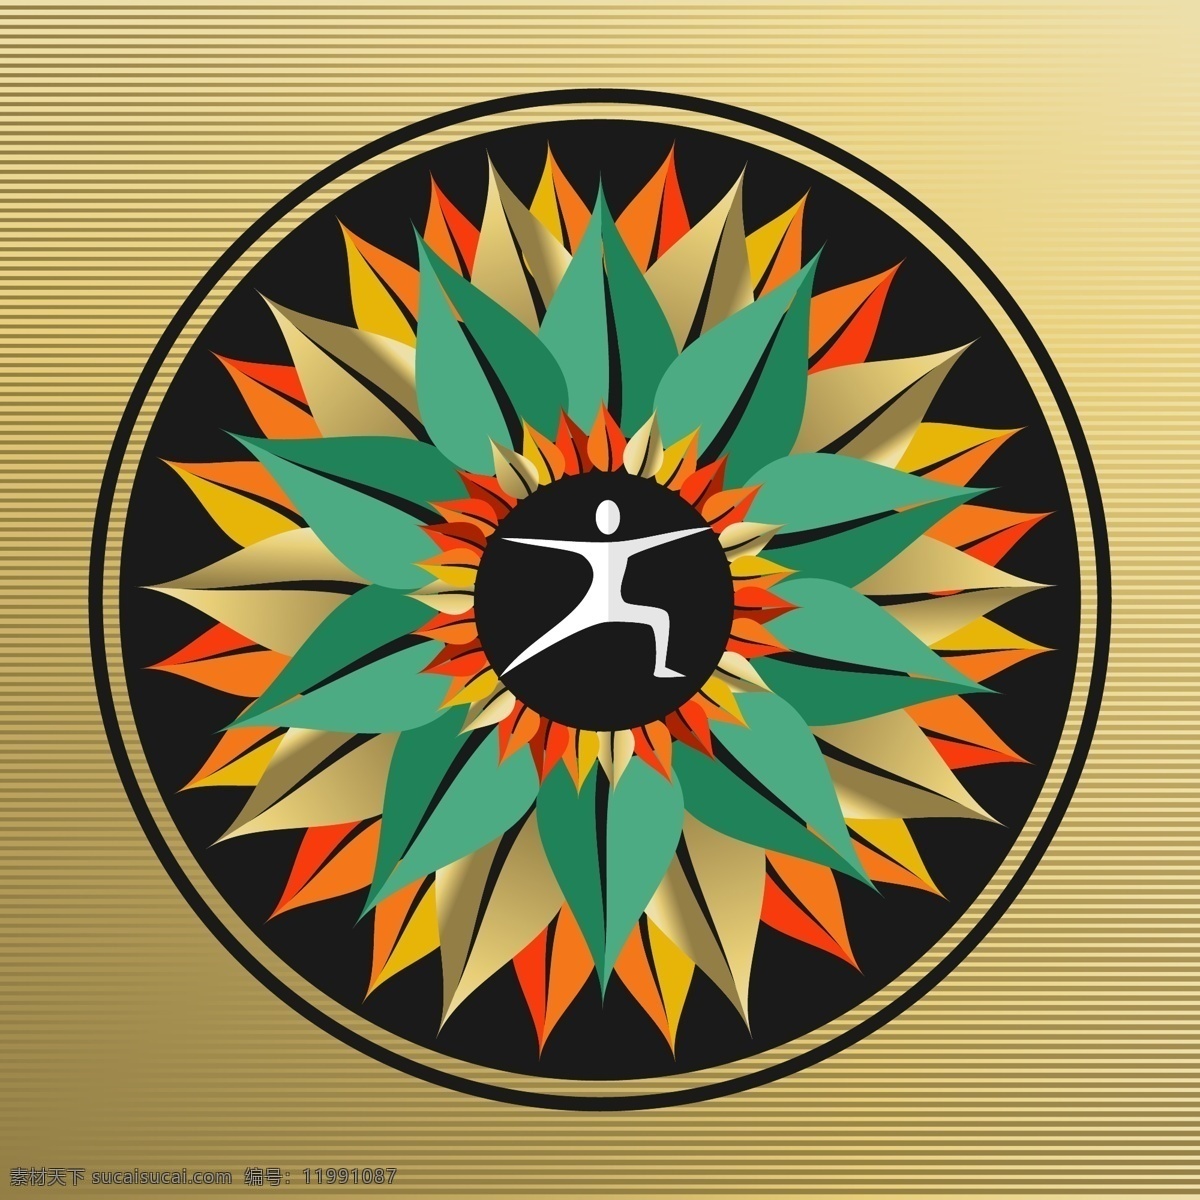 瑜伽广告 瑜伽海报 瑜伽logo 瑜伽标志 树叶 叶子 炫彩 人物 人形 剪影 瑜伽 坐姿 盘坐 盘膝